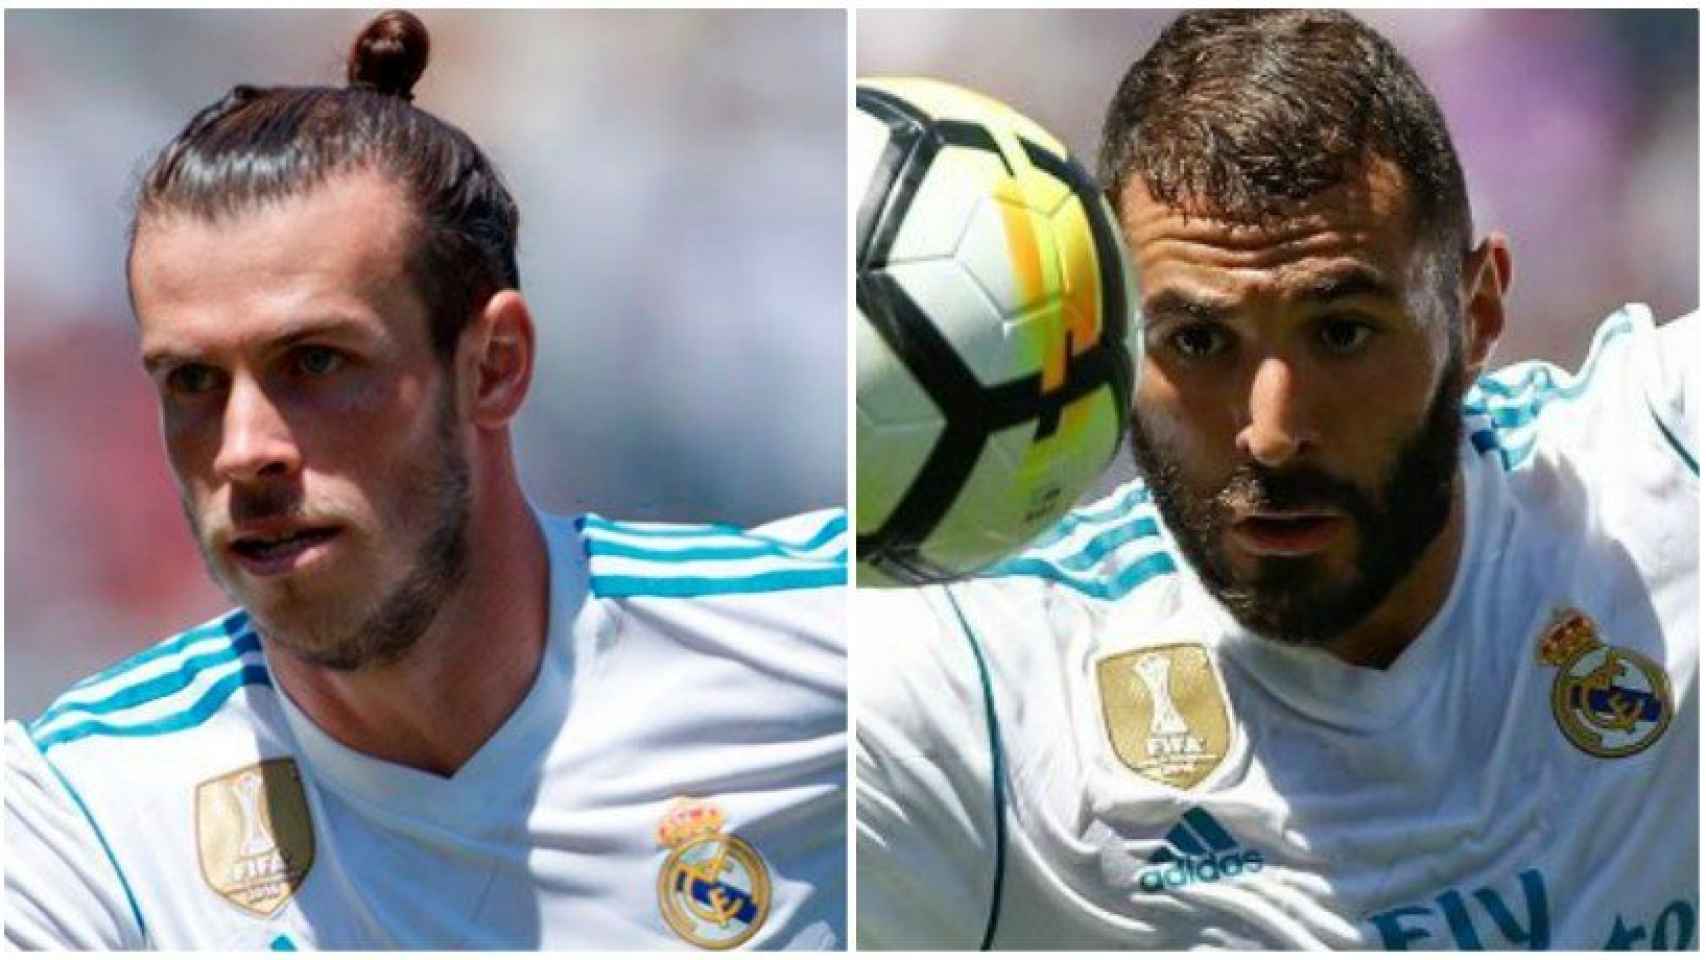 Bale y Benzema, la doble B funciona